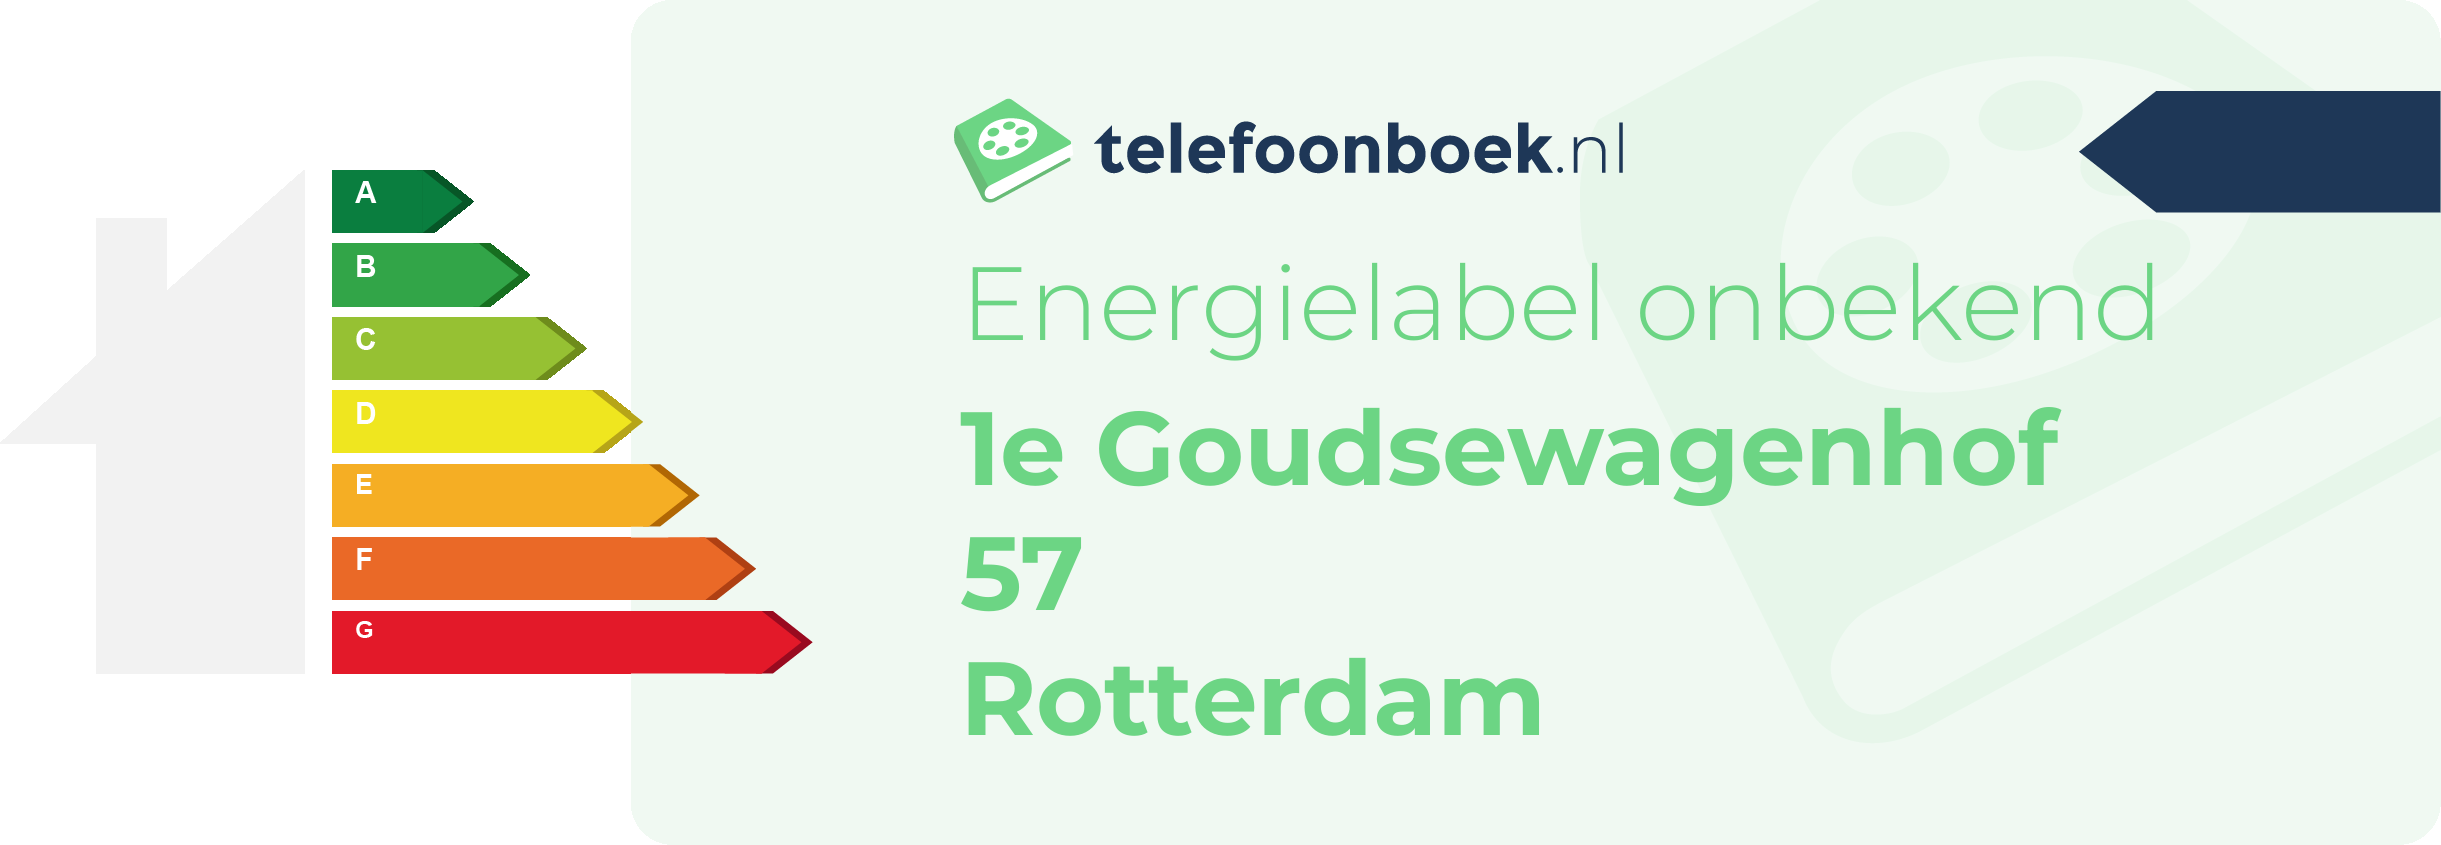 Energielabel 1e Goudsewagenhof 57 Rotterdam